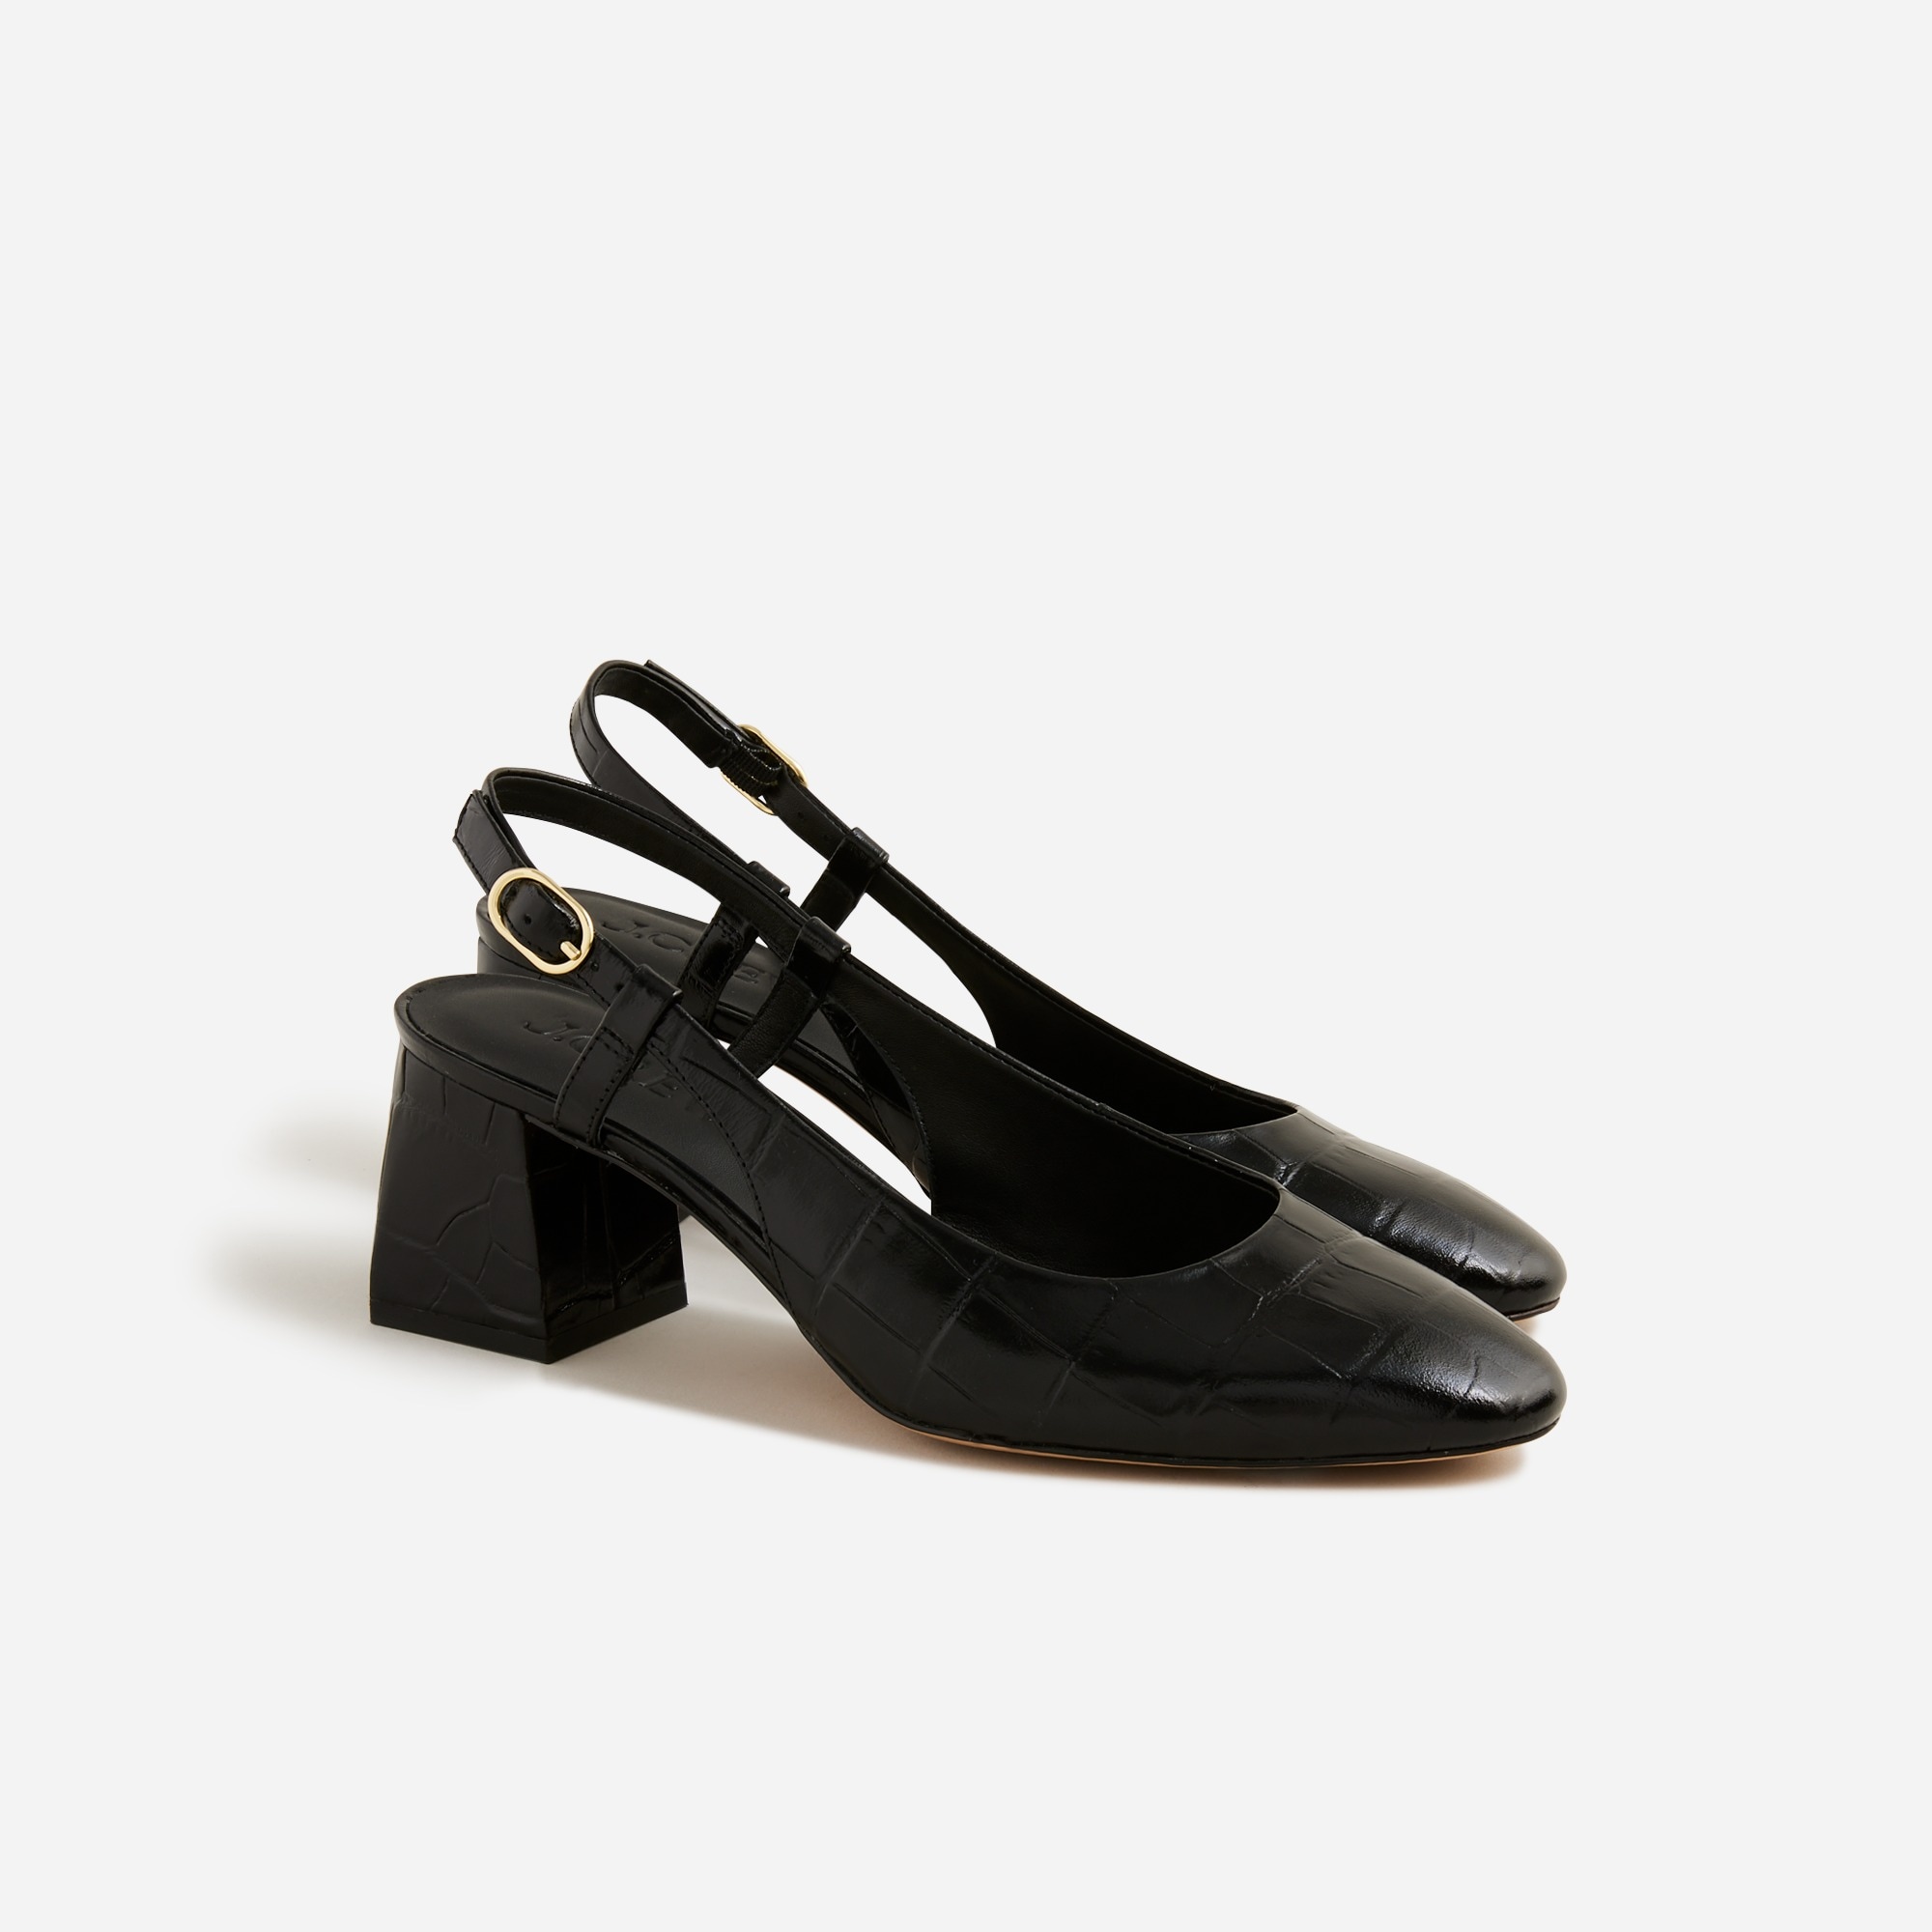  Layne slingback heels in croc-embossed leather